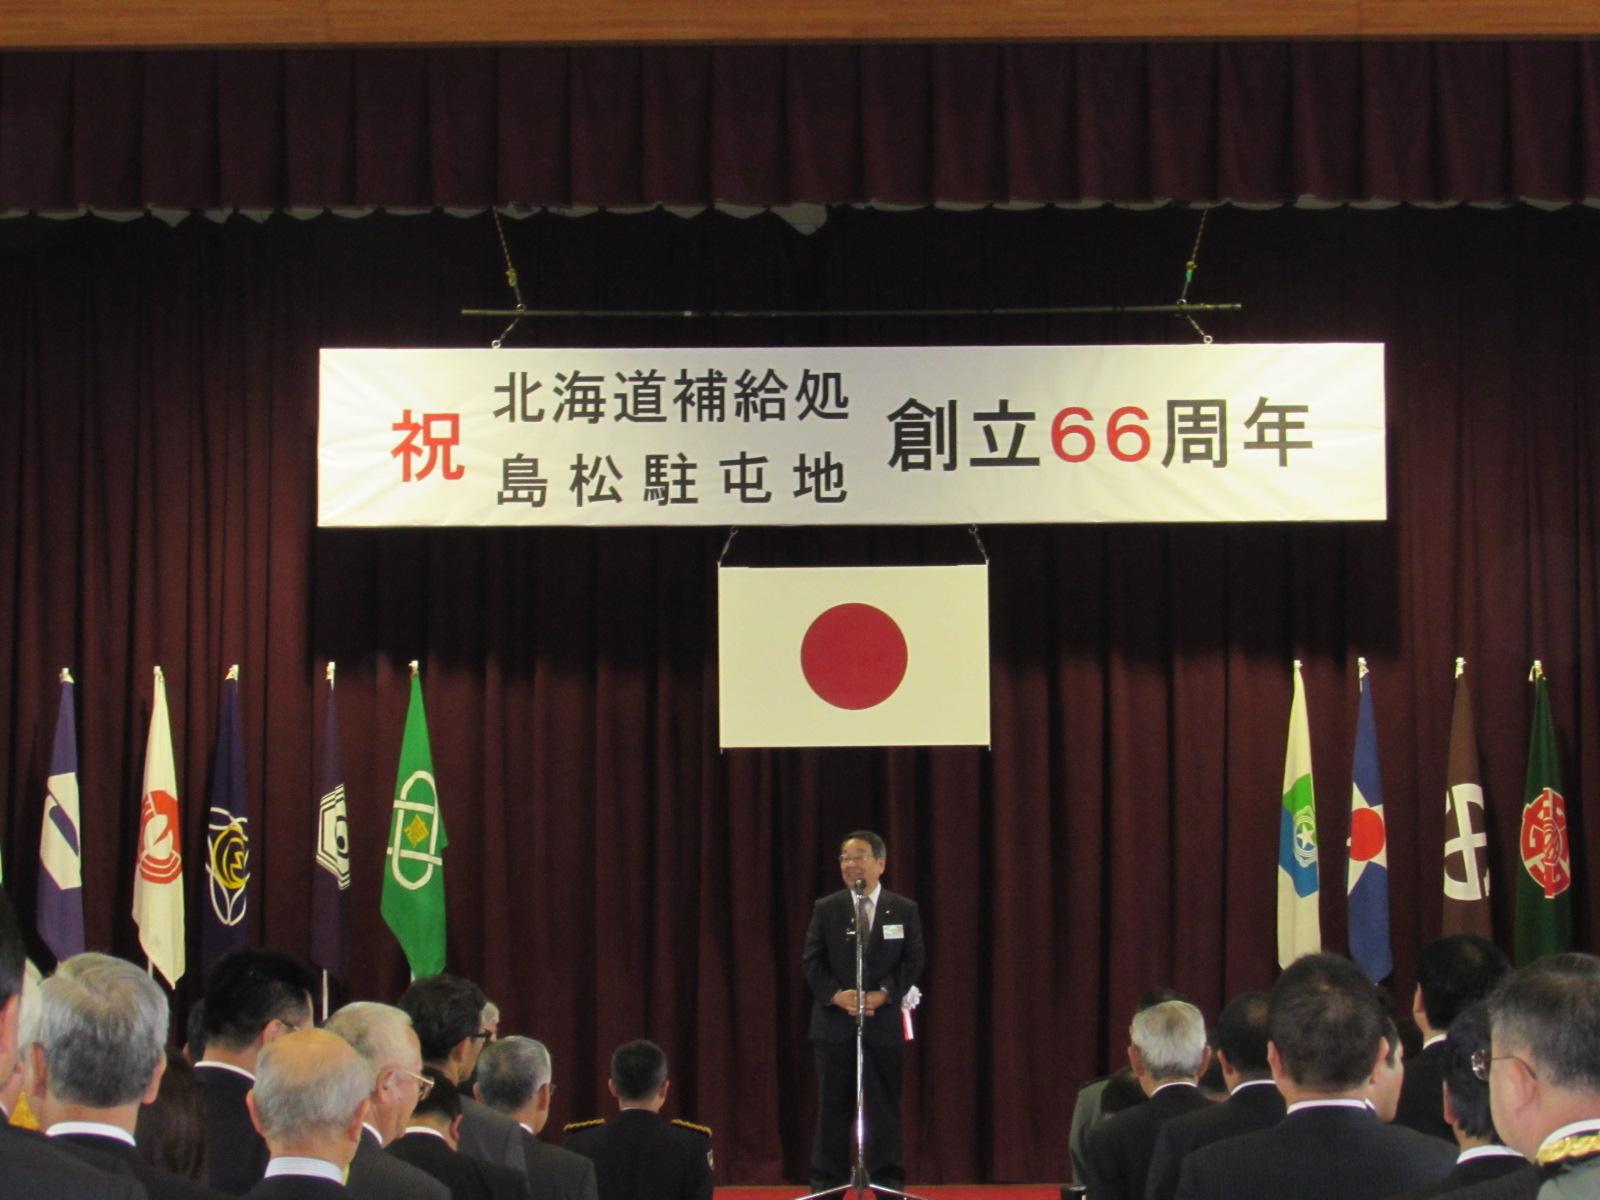 「北海道補給処及び島松駐屯地創立66周年記念行事」が開催されている写真